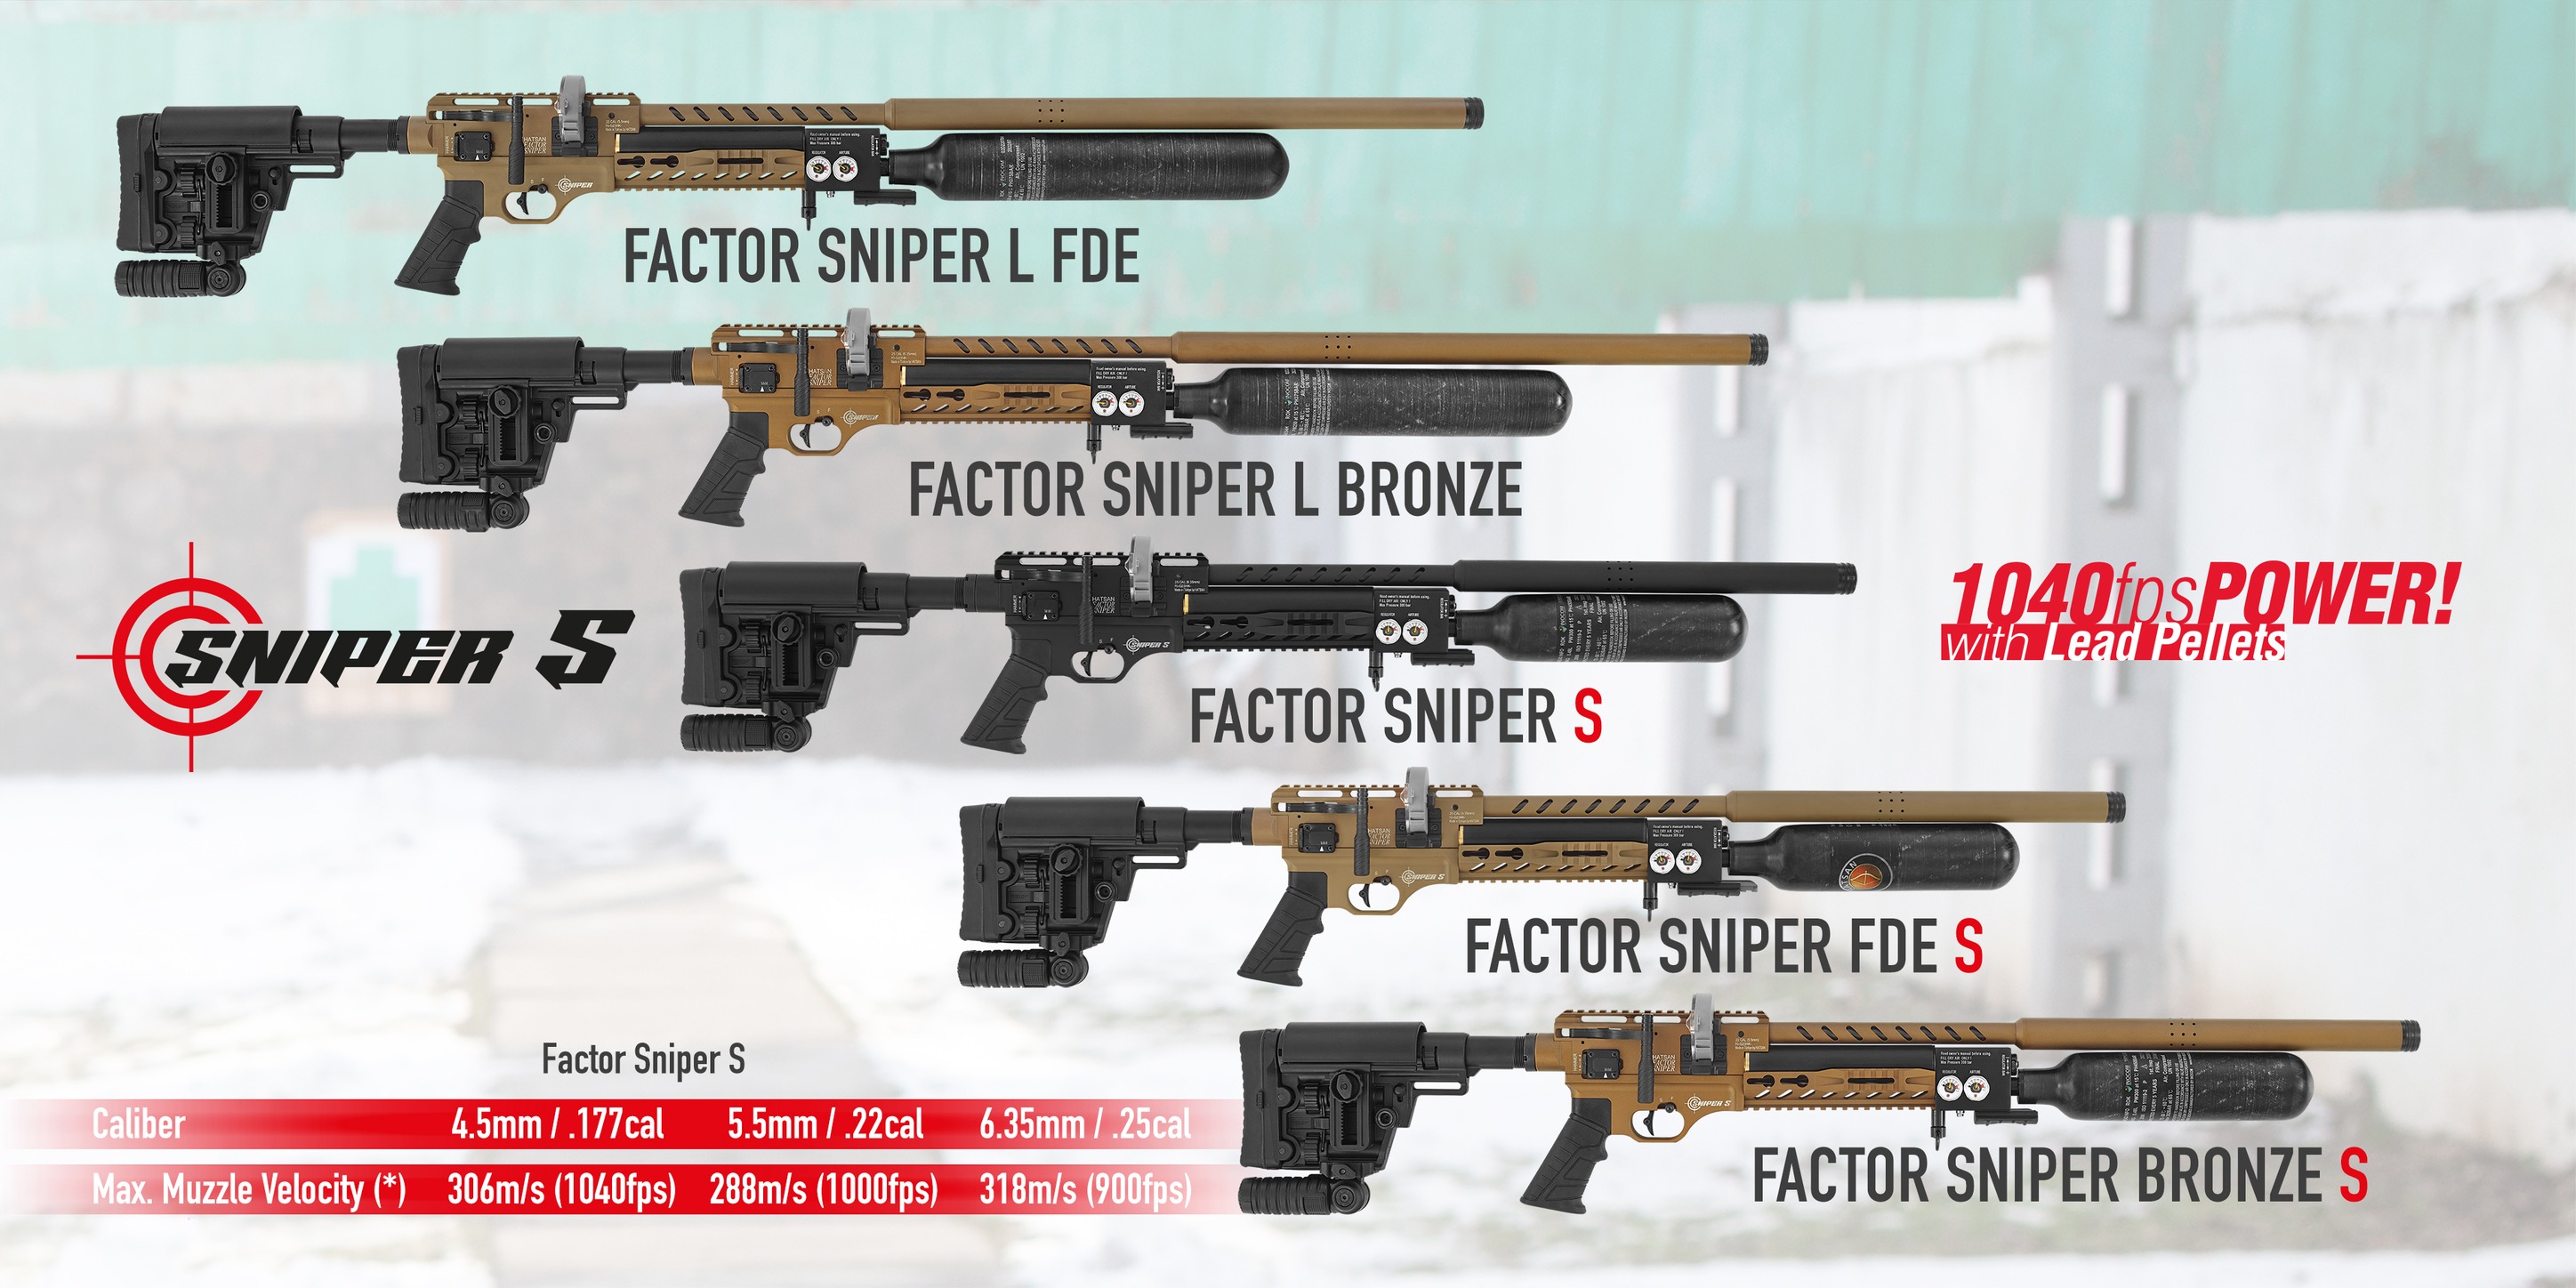 Factor Sniper All.jpg